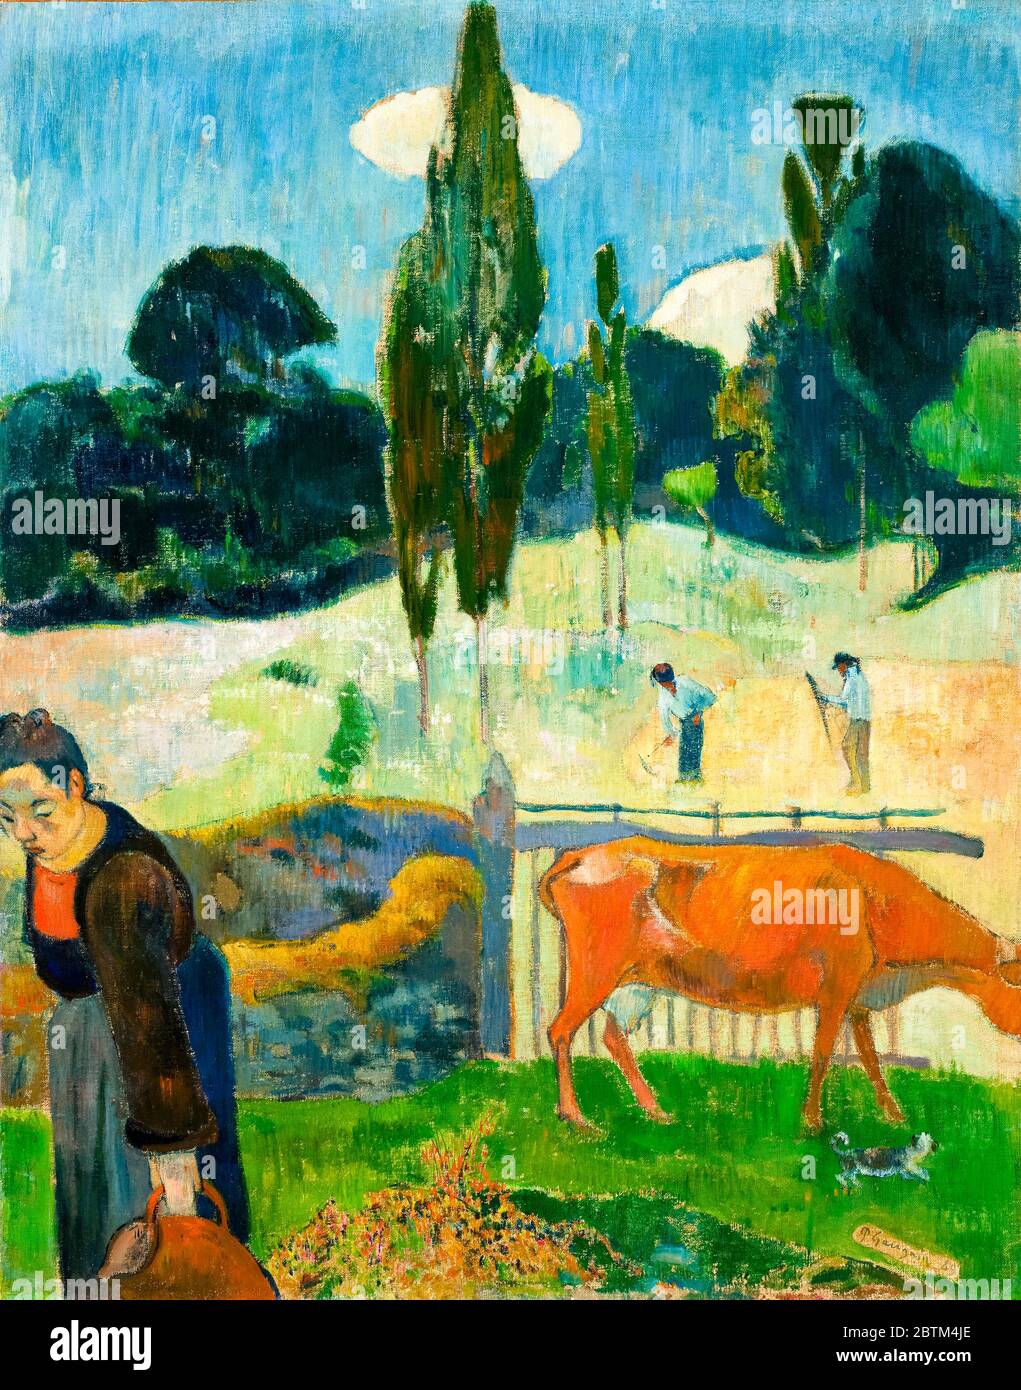 Paul Gauguin, la vache rouge, peinture, 1889 Banque D'Images